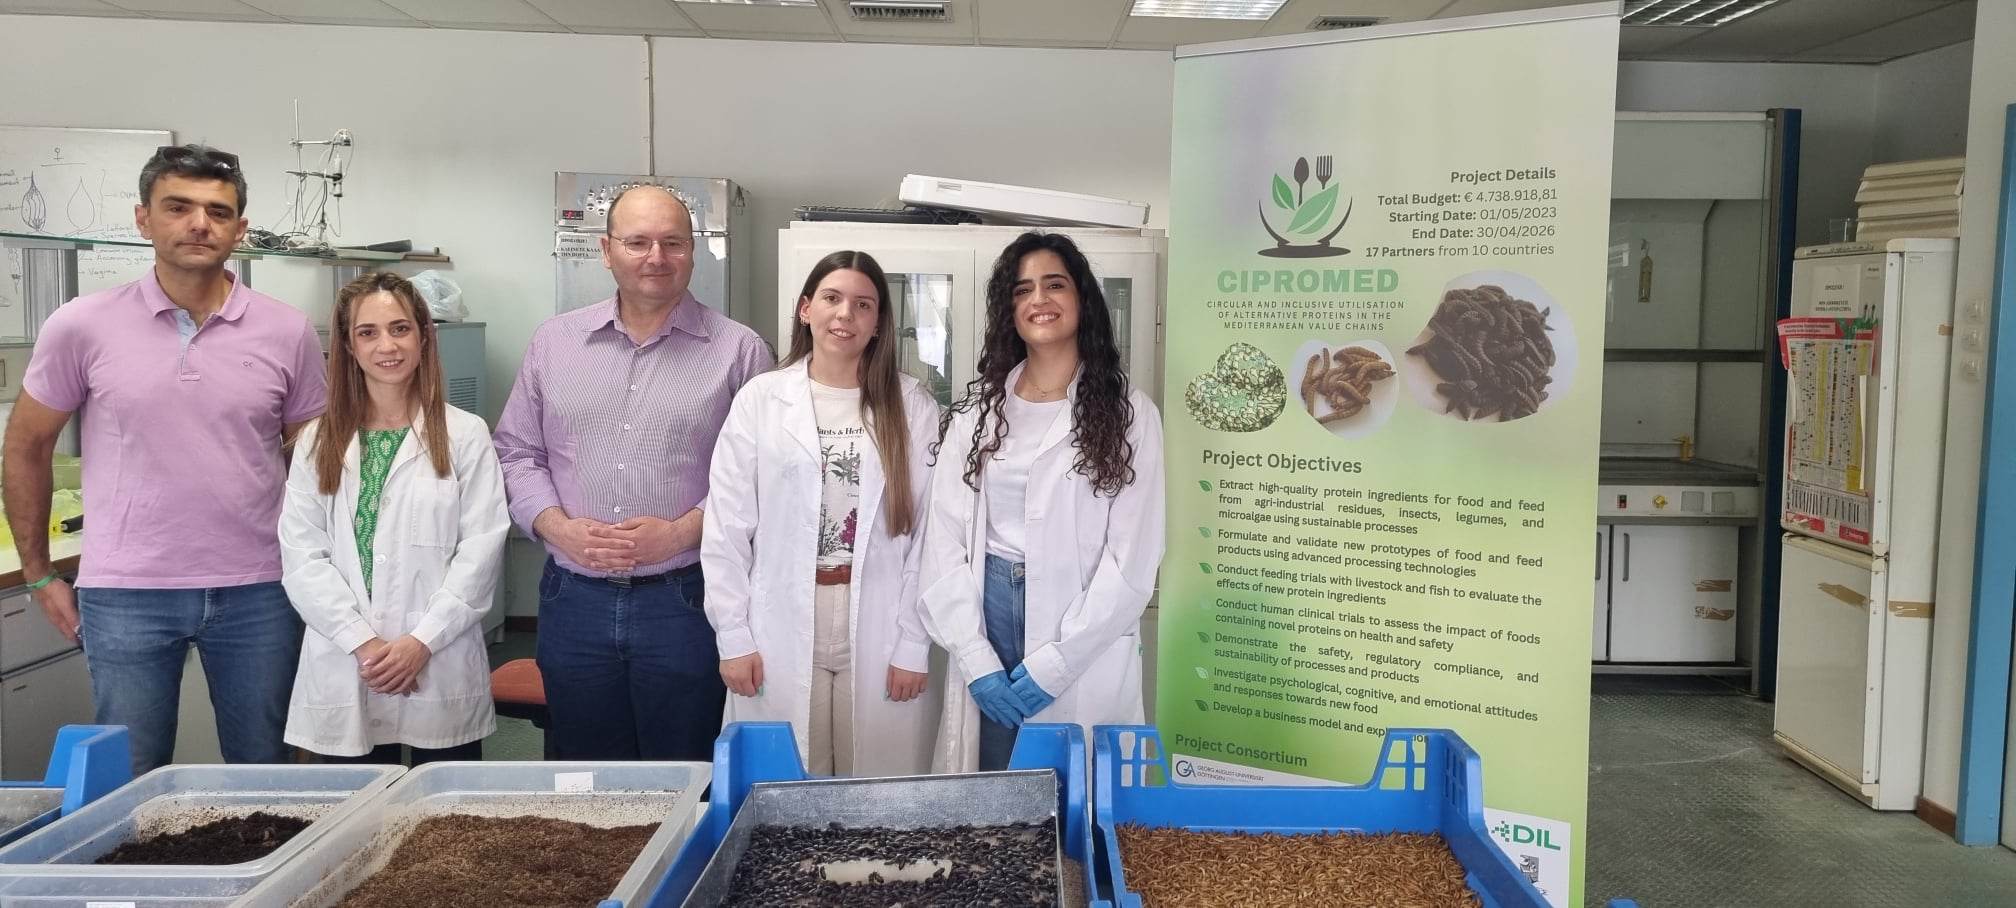 Πανεπιστήμιο Θεσσαλίας: Μπάρες και τσιπς εντομοπρωτείνης από το Εργαστήριο Εντομολογίας στο ράφι του καταστήματος (video)